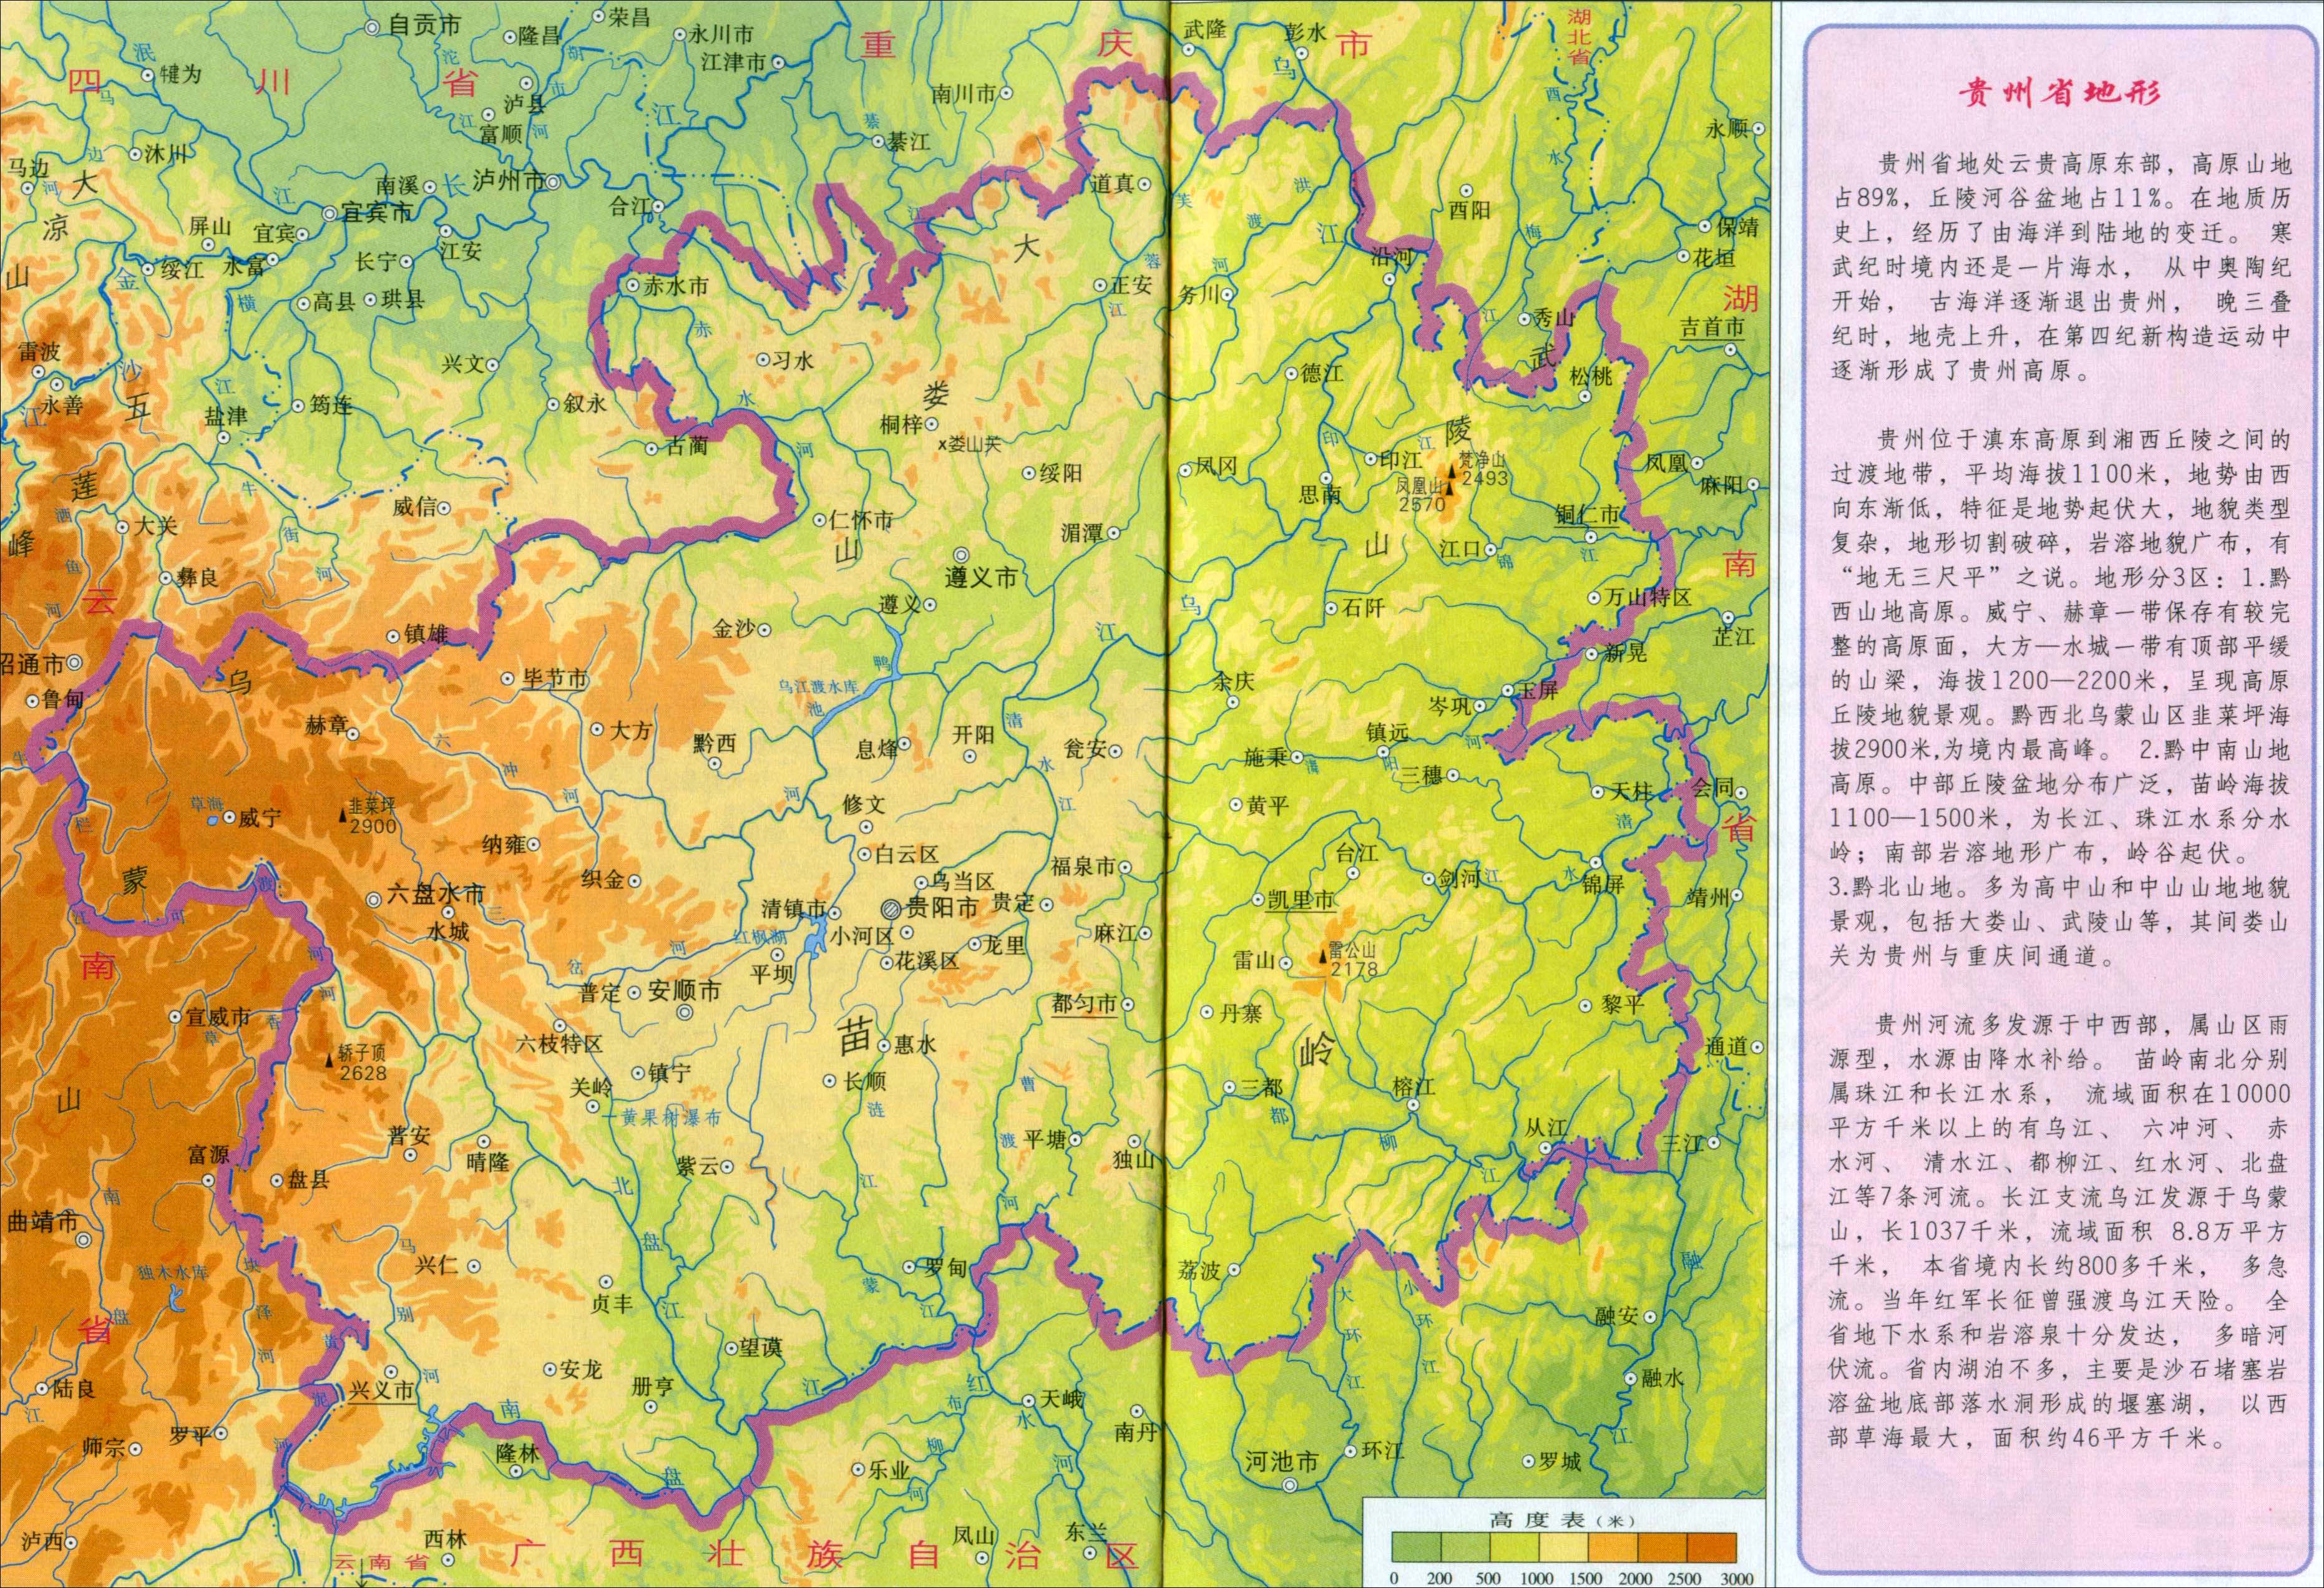 贵州 >> 贵州省地形图  相关链接: 中国  北京  上海  天津  重庆图片